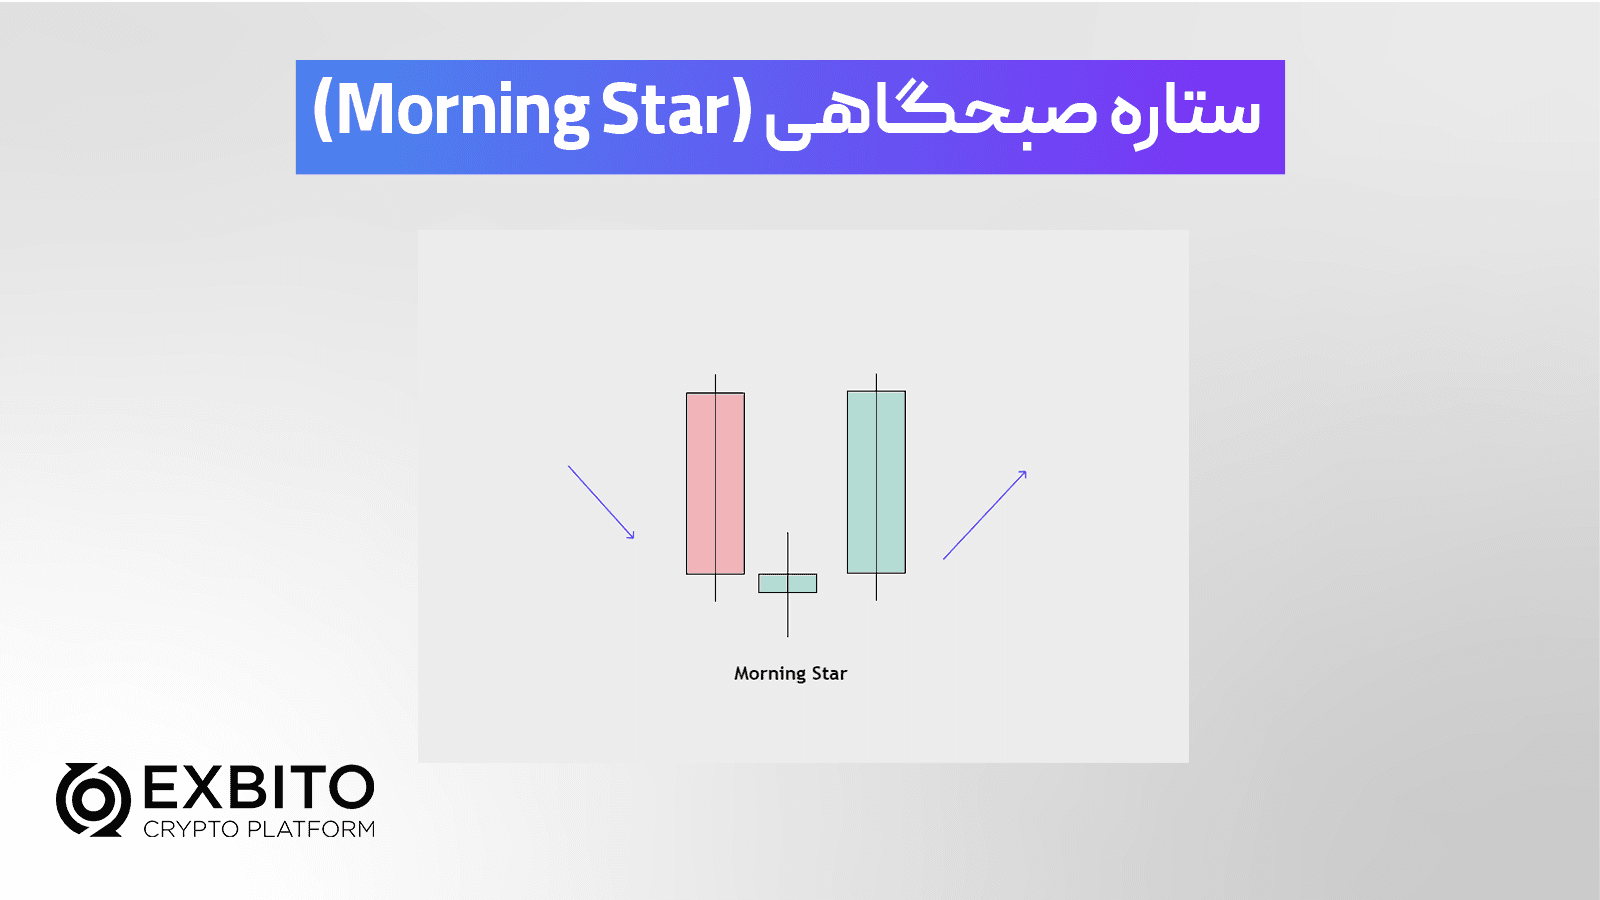 الگوی ستاره صبحگاهی (Morning Star)